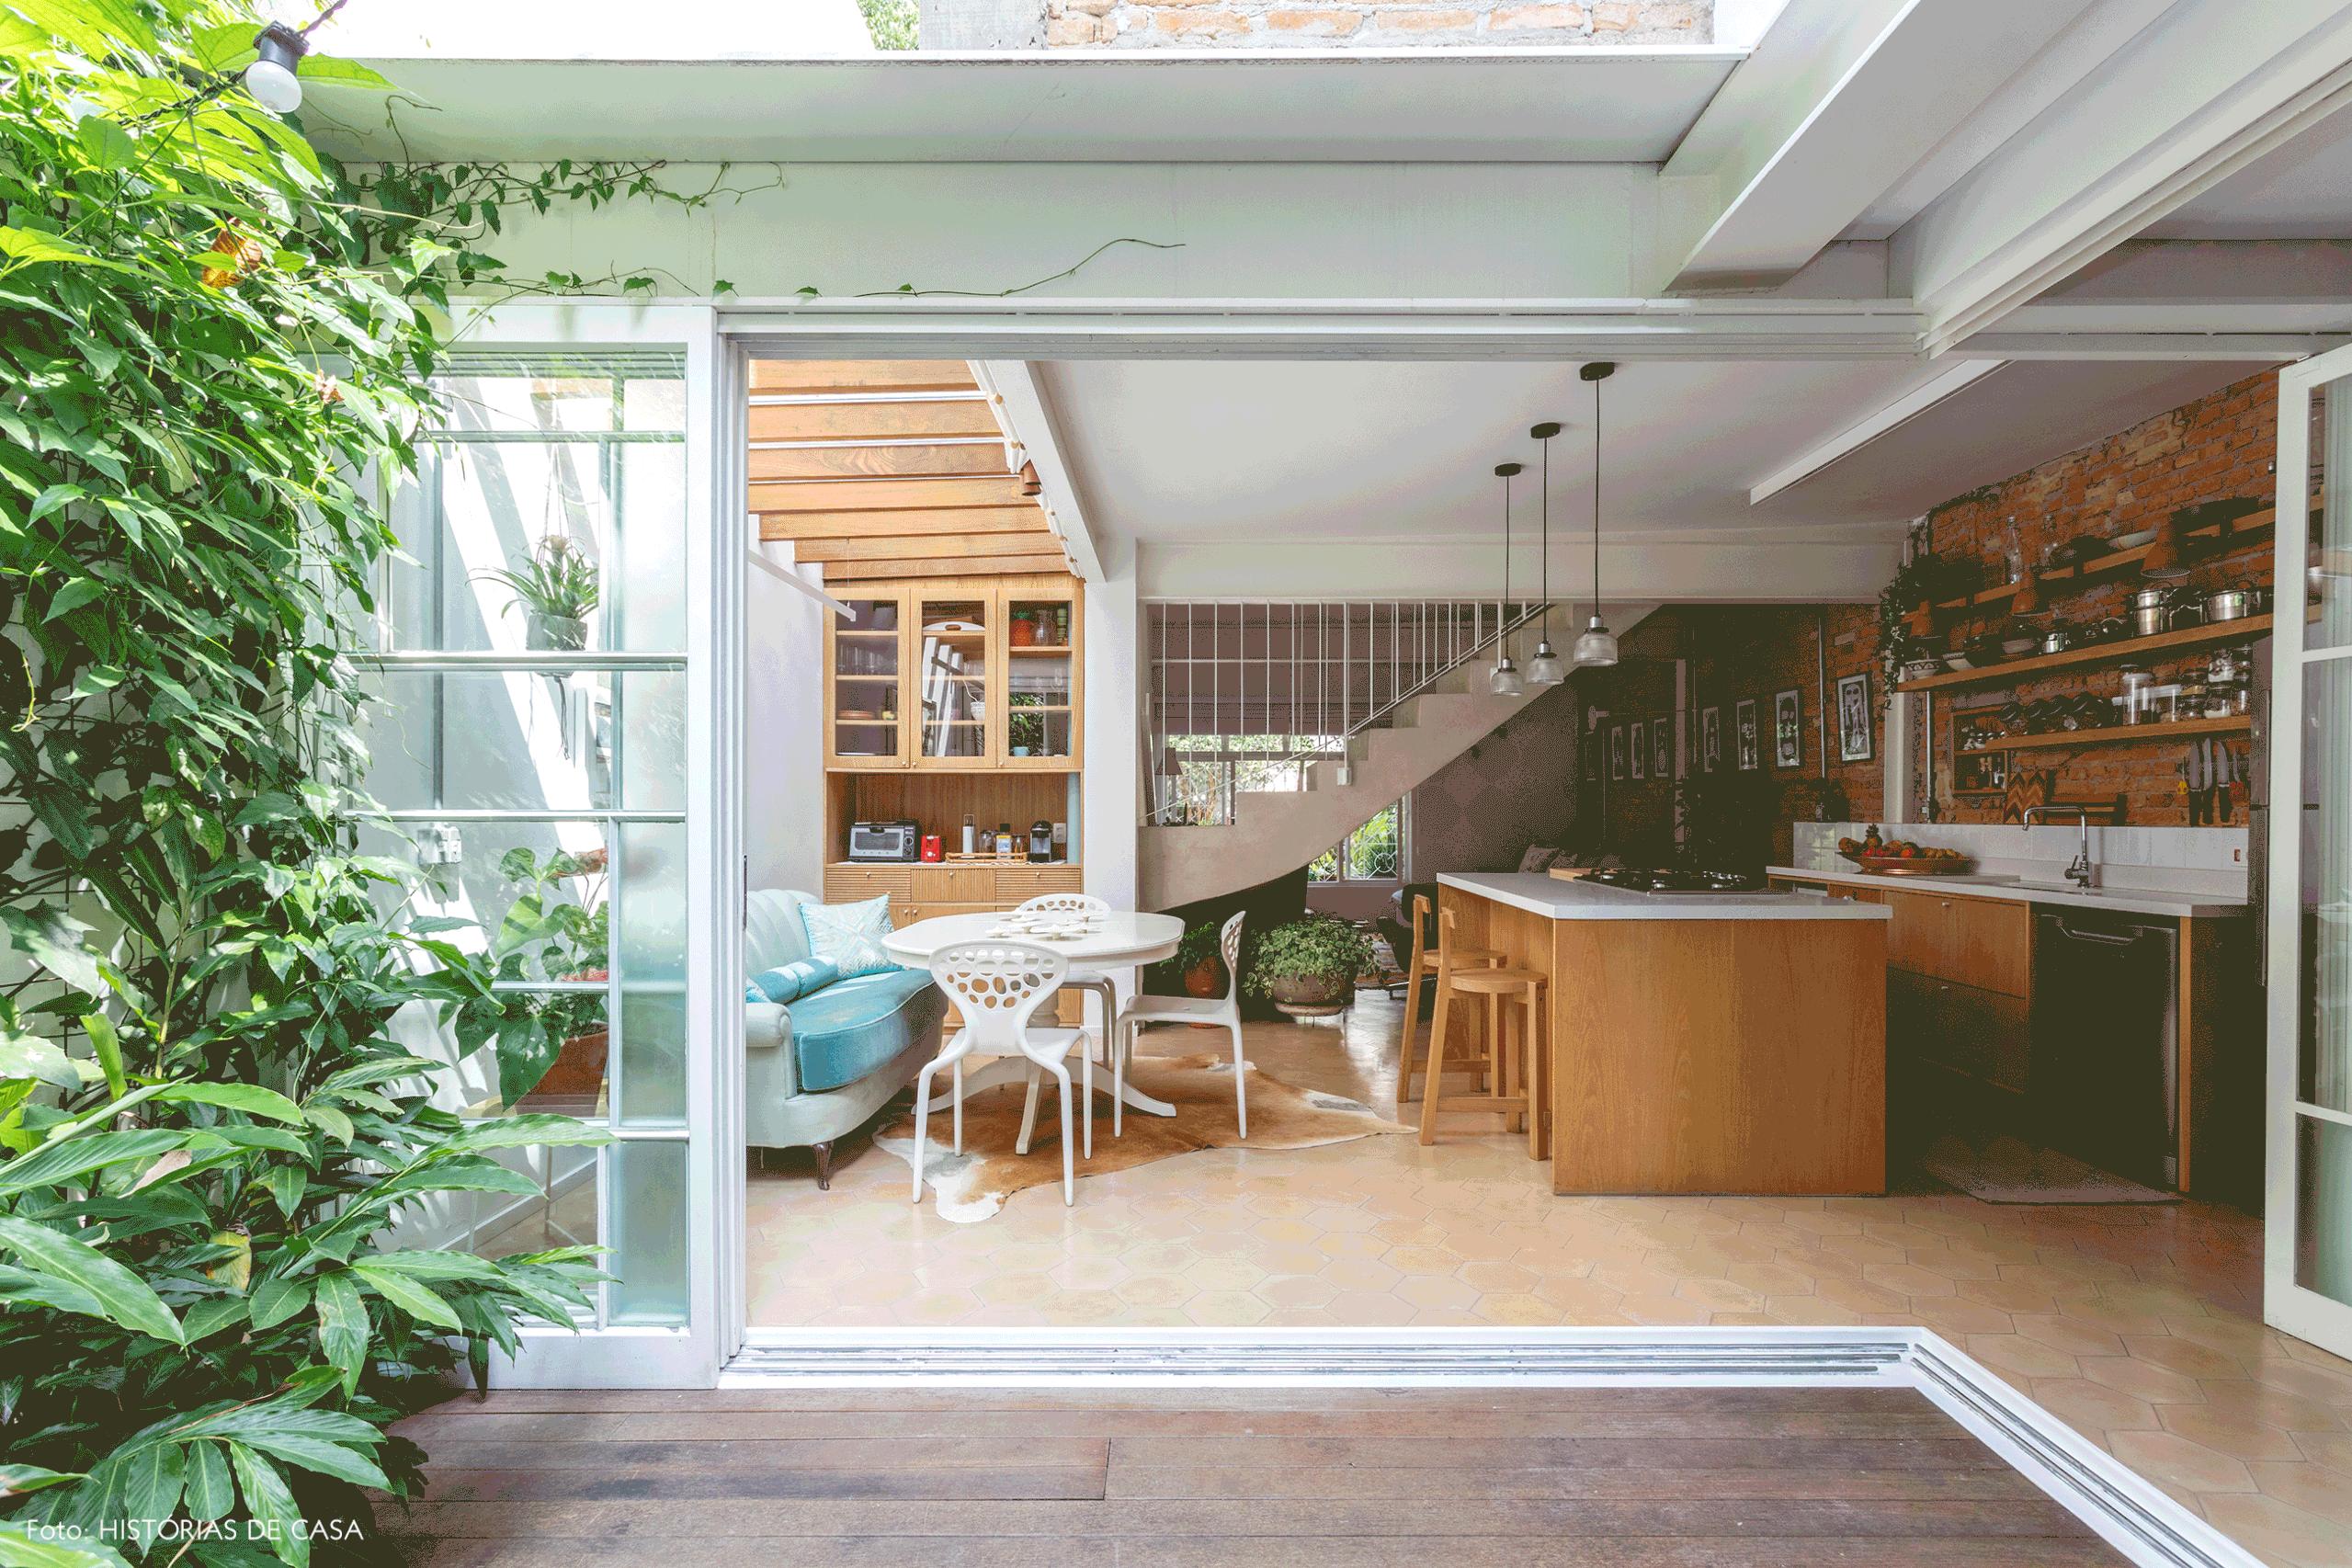 Cozinha integrada com sala de jantar e quintal com plantas